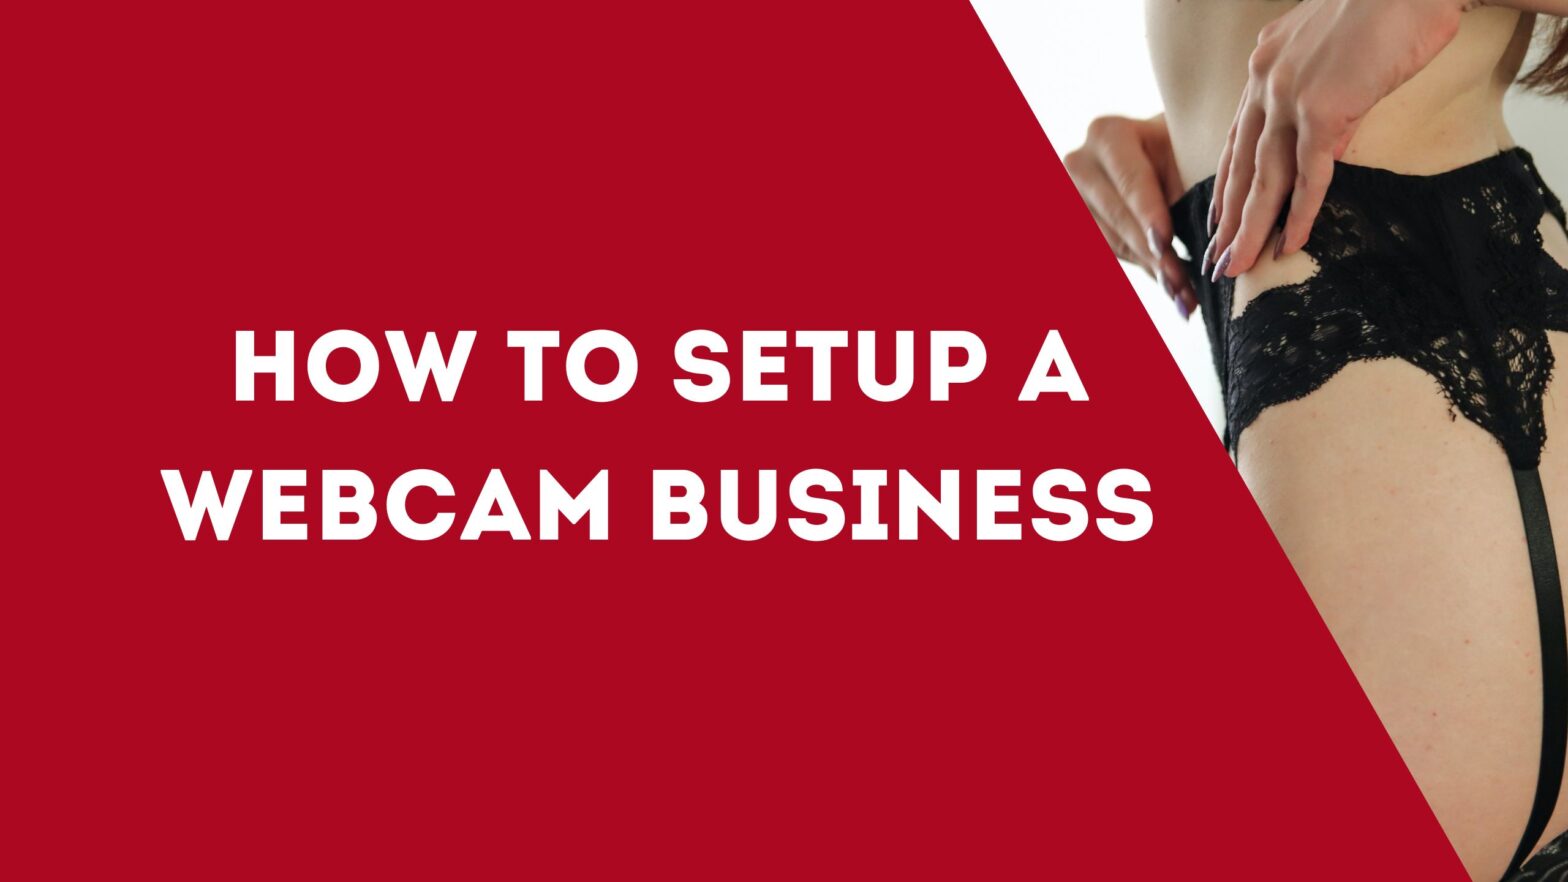 How to Setup a Webcam Business